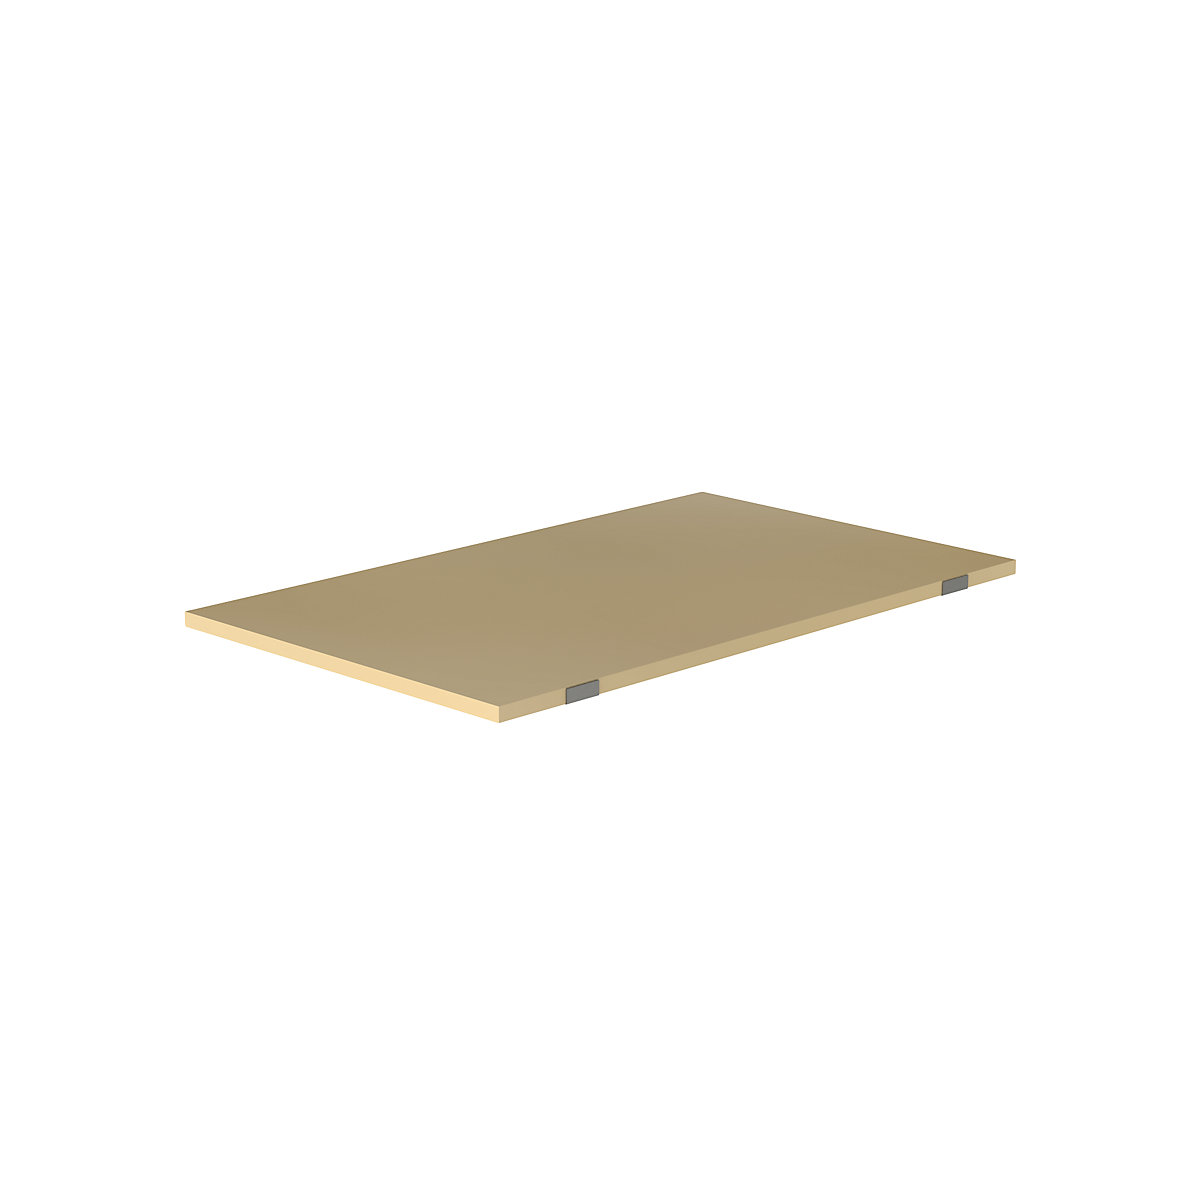 EUROKRAFTpro – Shelf for pallet shelf unit, moulded chipboard, for beam length 1825 mm, shelf unit depth 1100 mm